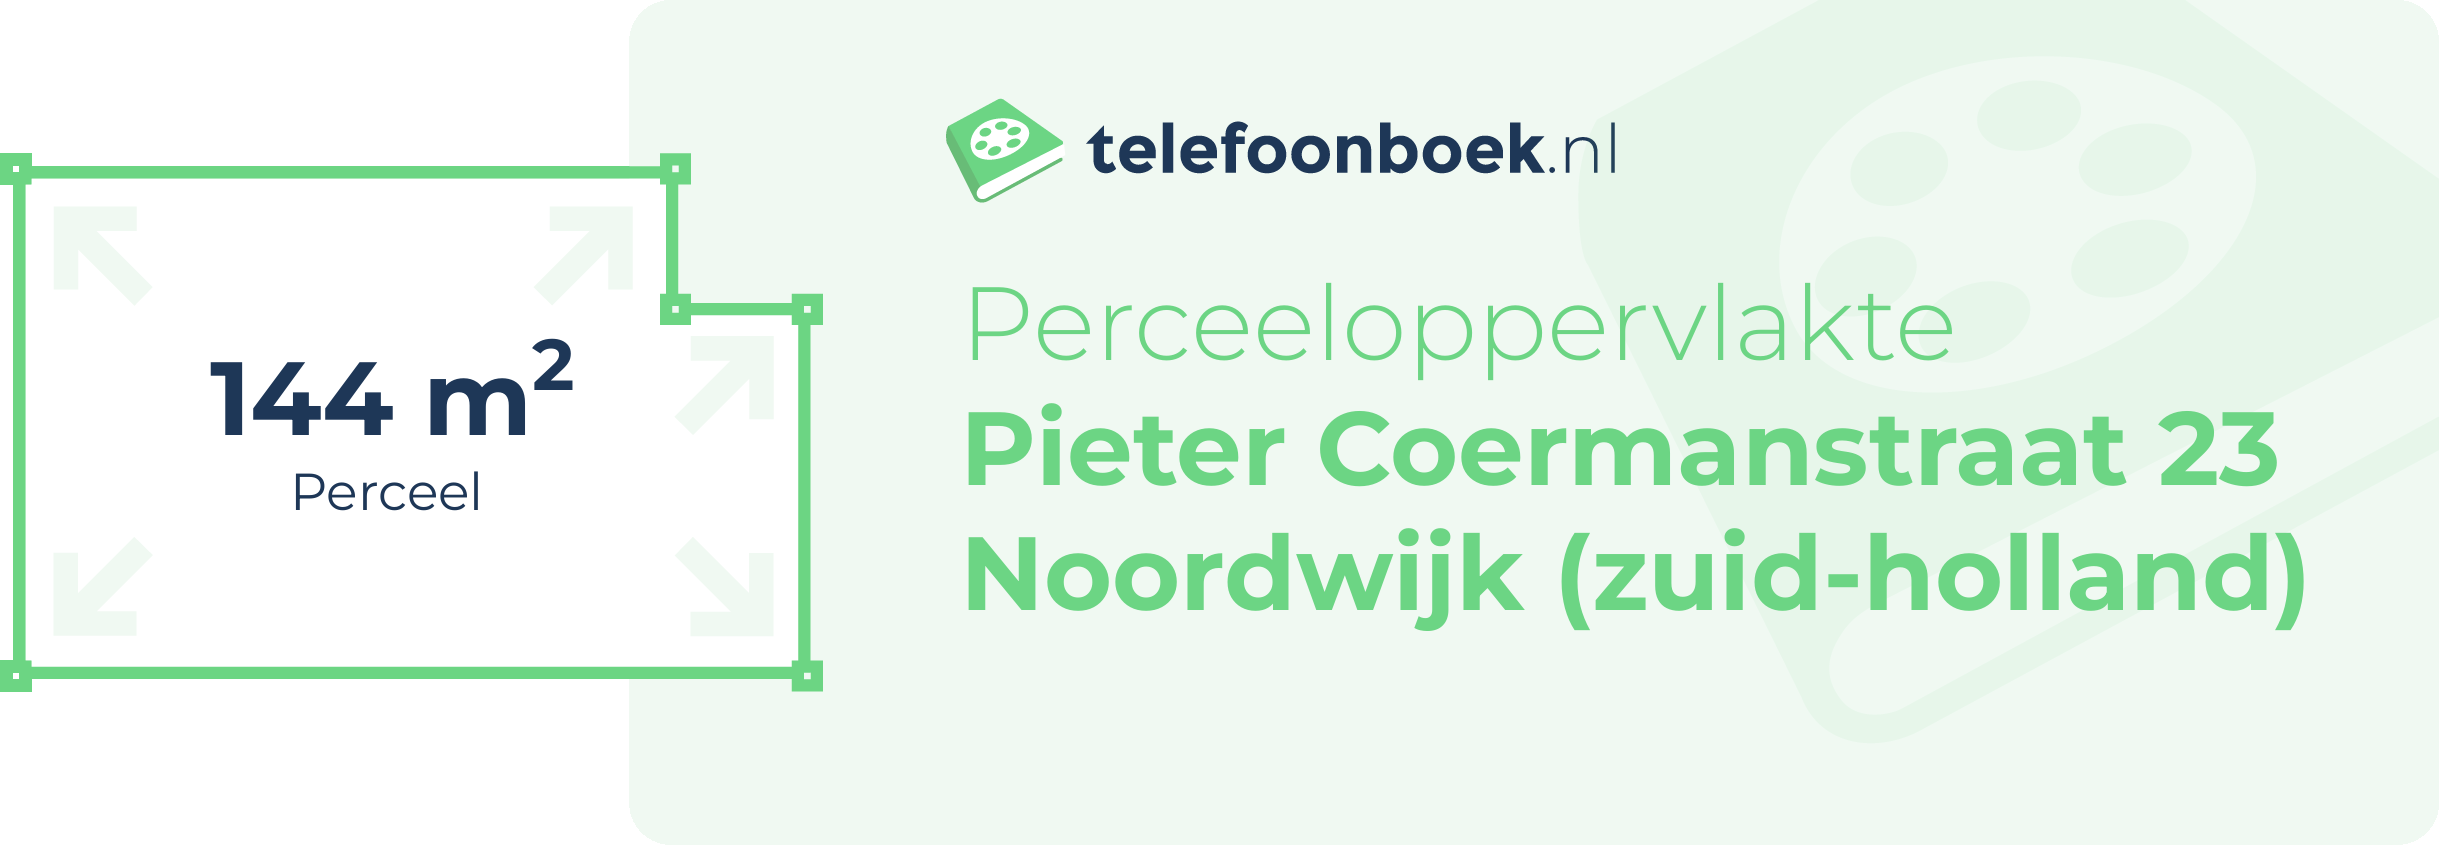 Perceeloppervlakte Pieter Coermanstraat 23 Noordwijk (Zuid-Holland)